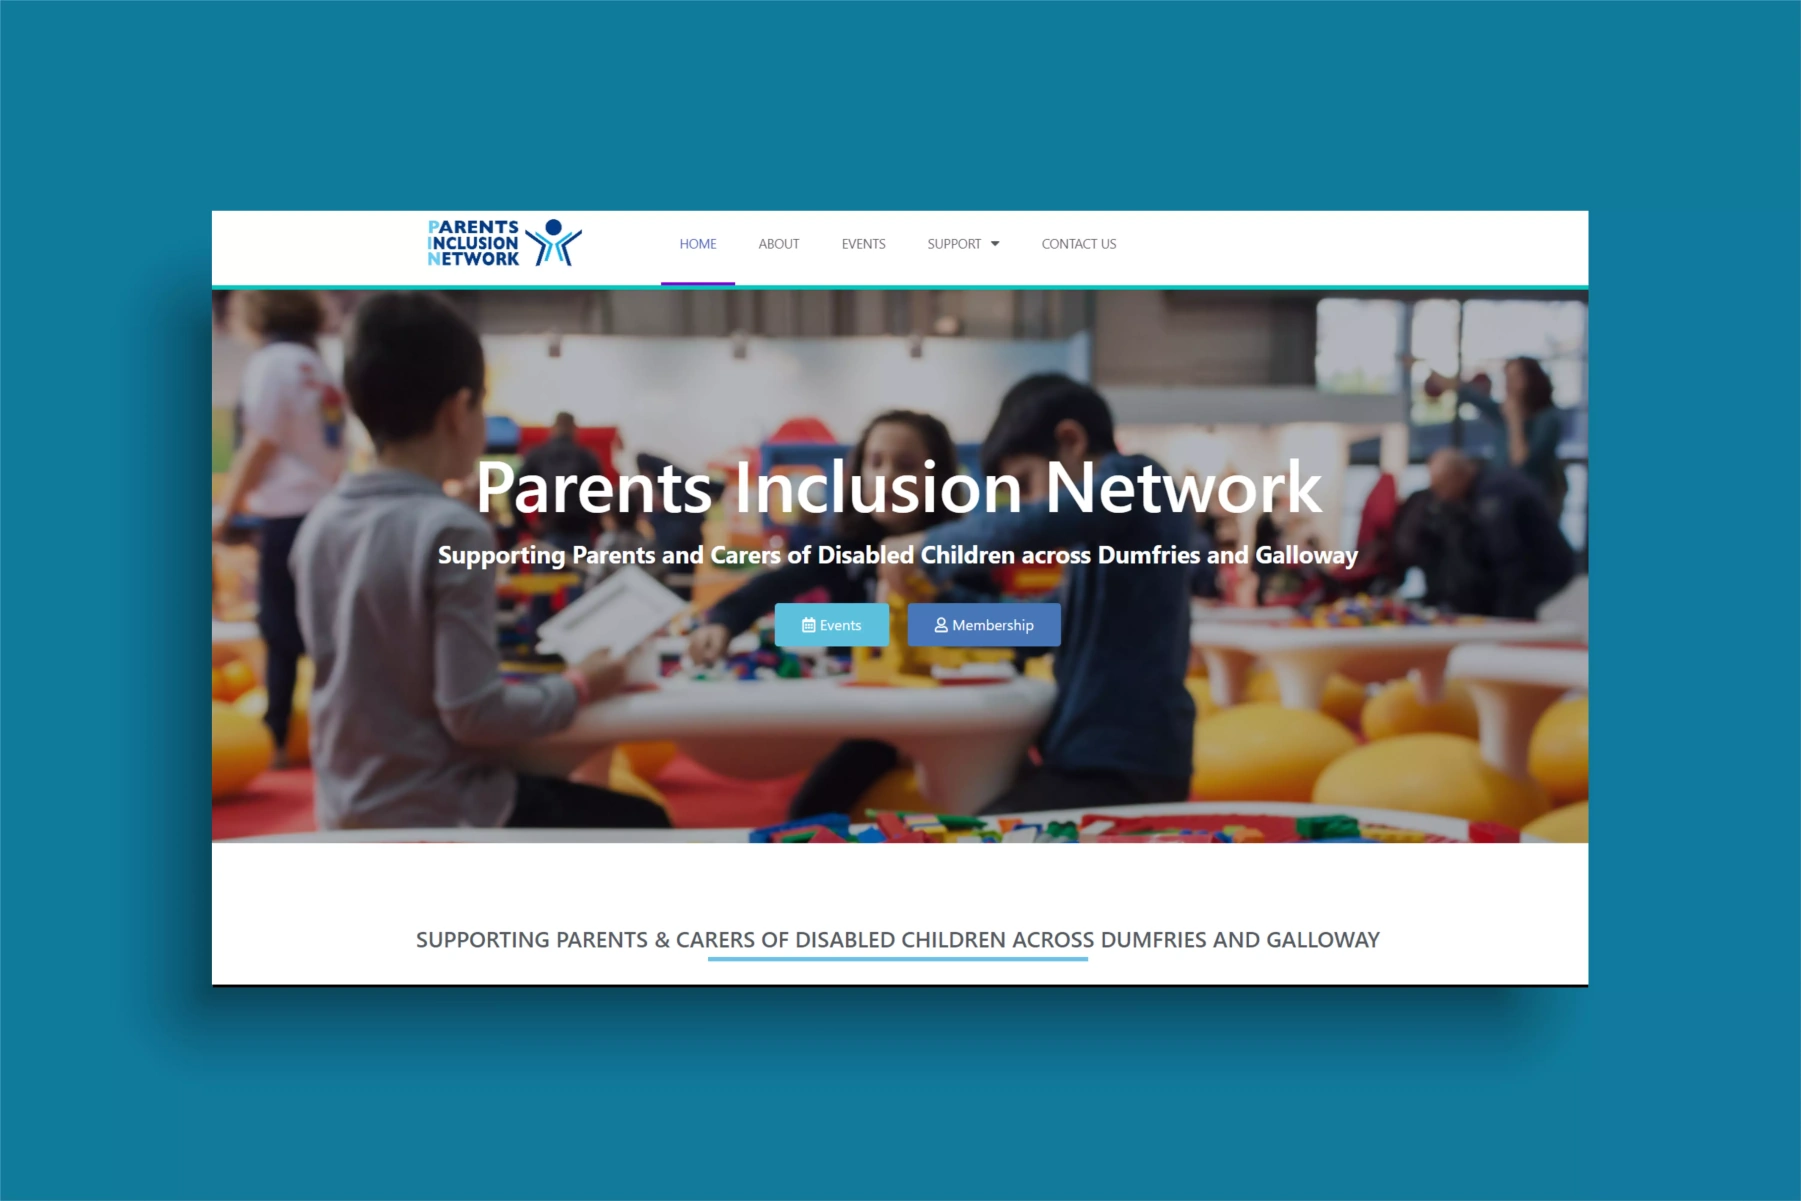 Parents Inclusion Network website build